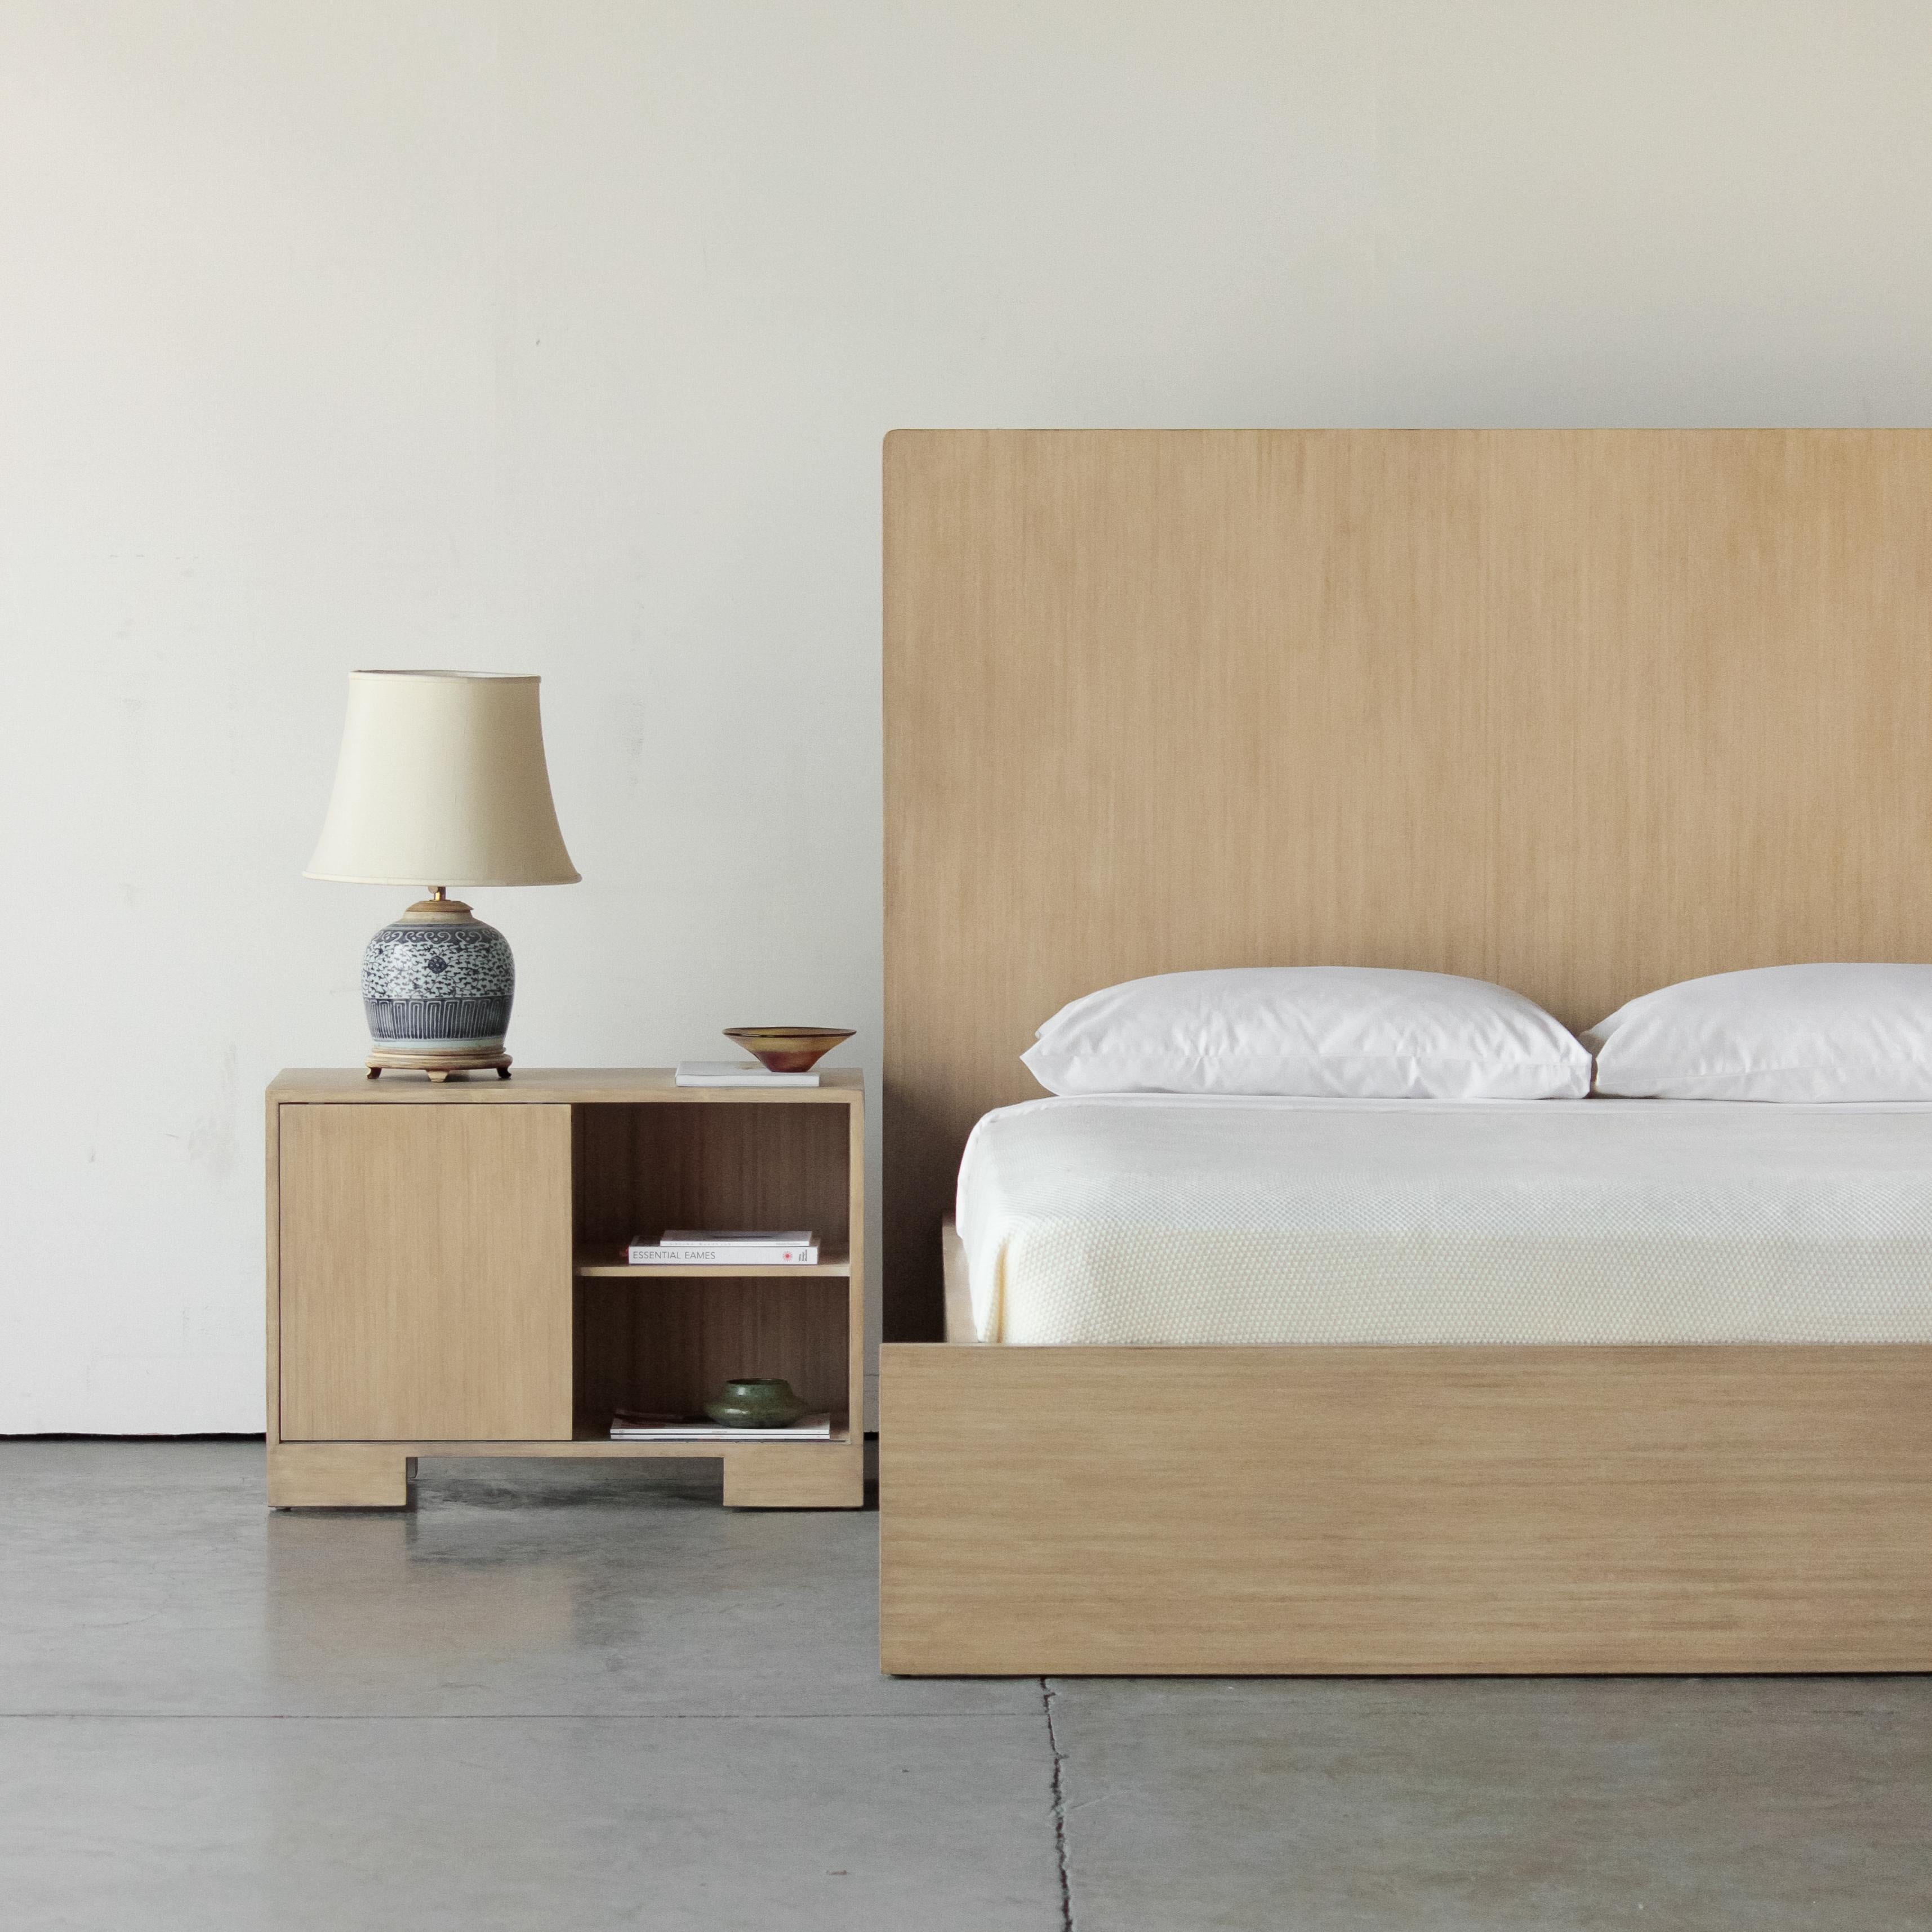 Das Fen Plank Bed bietet klare Linien und eine minimale Silhouette. Die aus massivem Bambus gefertigten Bretter sind zu einem ruhigen und erholsamen Mittelpunkt des Schlafzimmers zusammengefügt. Erhältlich in den Größen Queen und King.

Die Fen